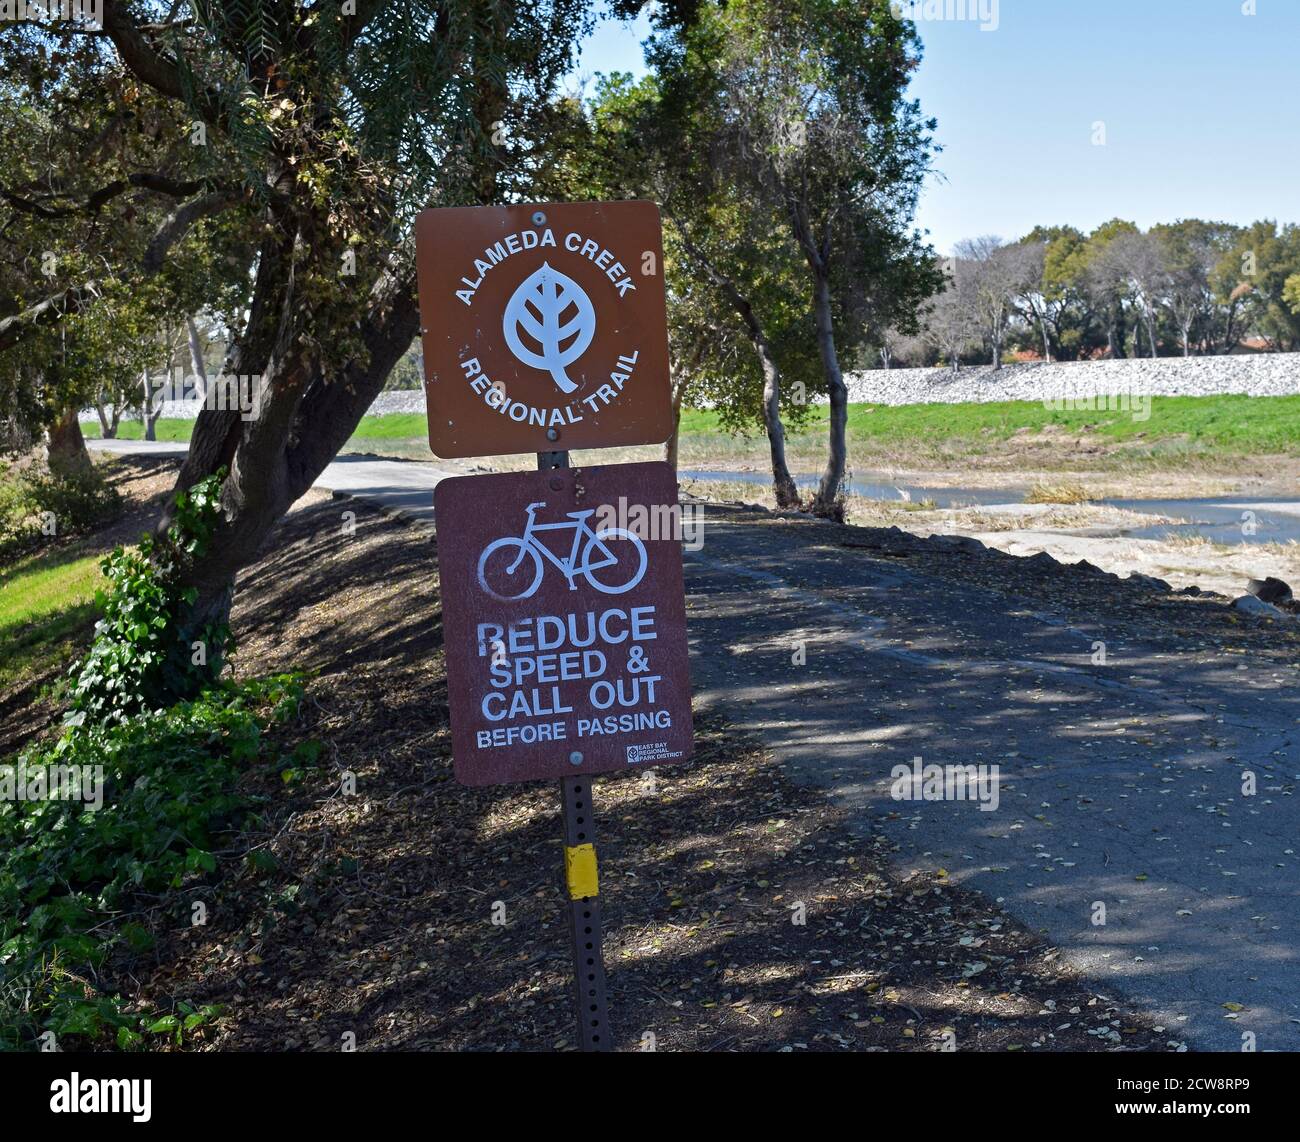 Alameda Creek Trail, Fahrräder reduzieren die Geschwindigkeit vor dem Passieren, Schild, East Bay Regional Trail, Kalifornien Stockfoto